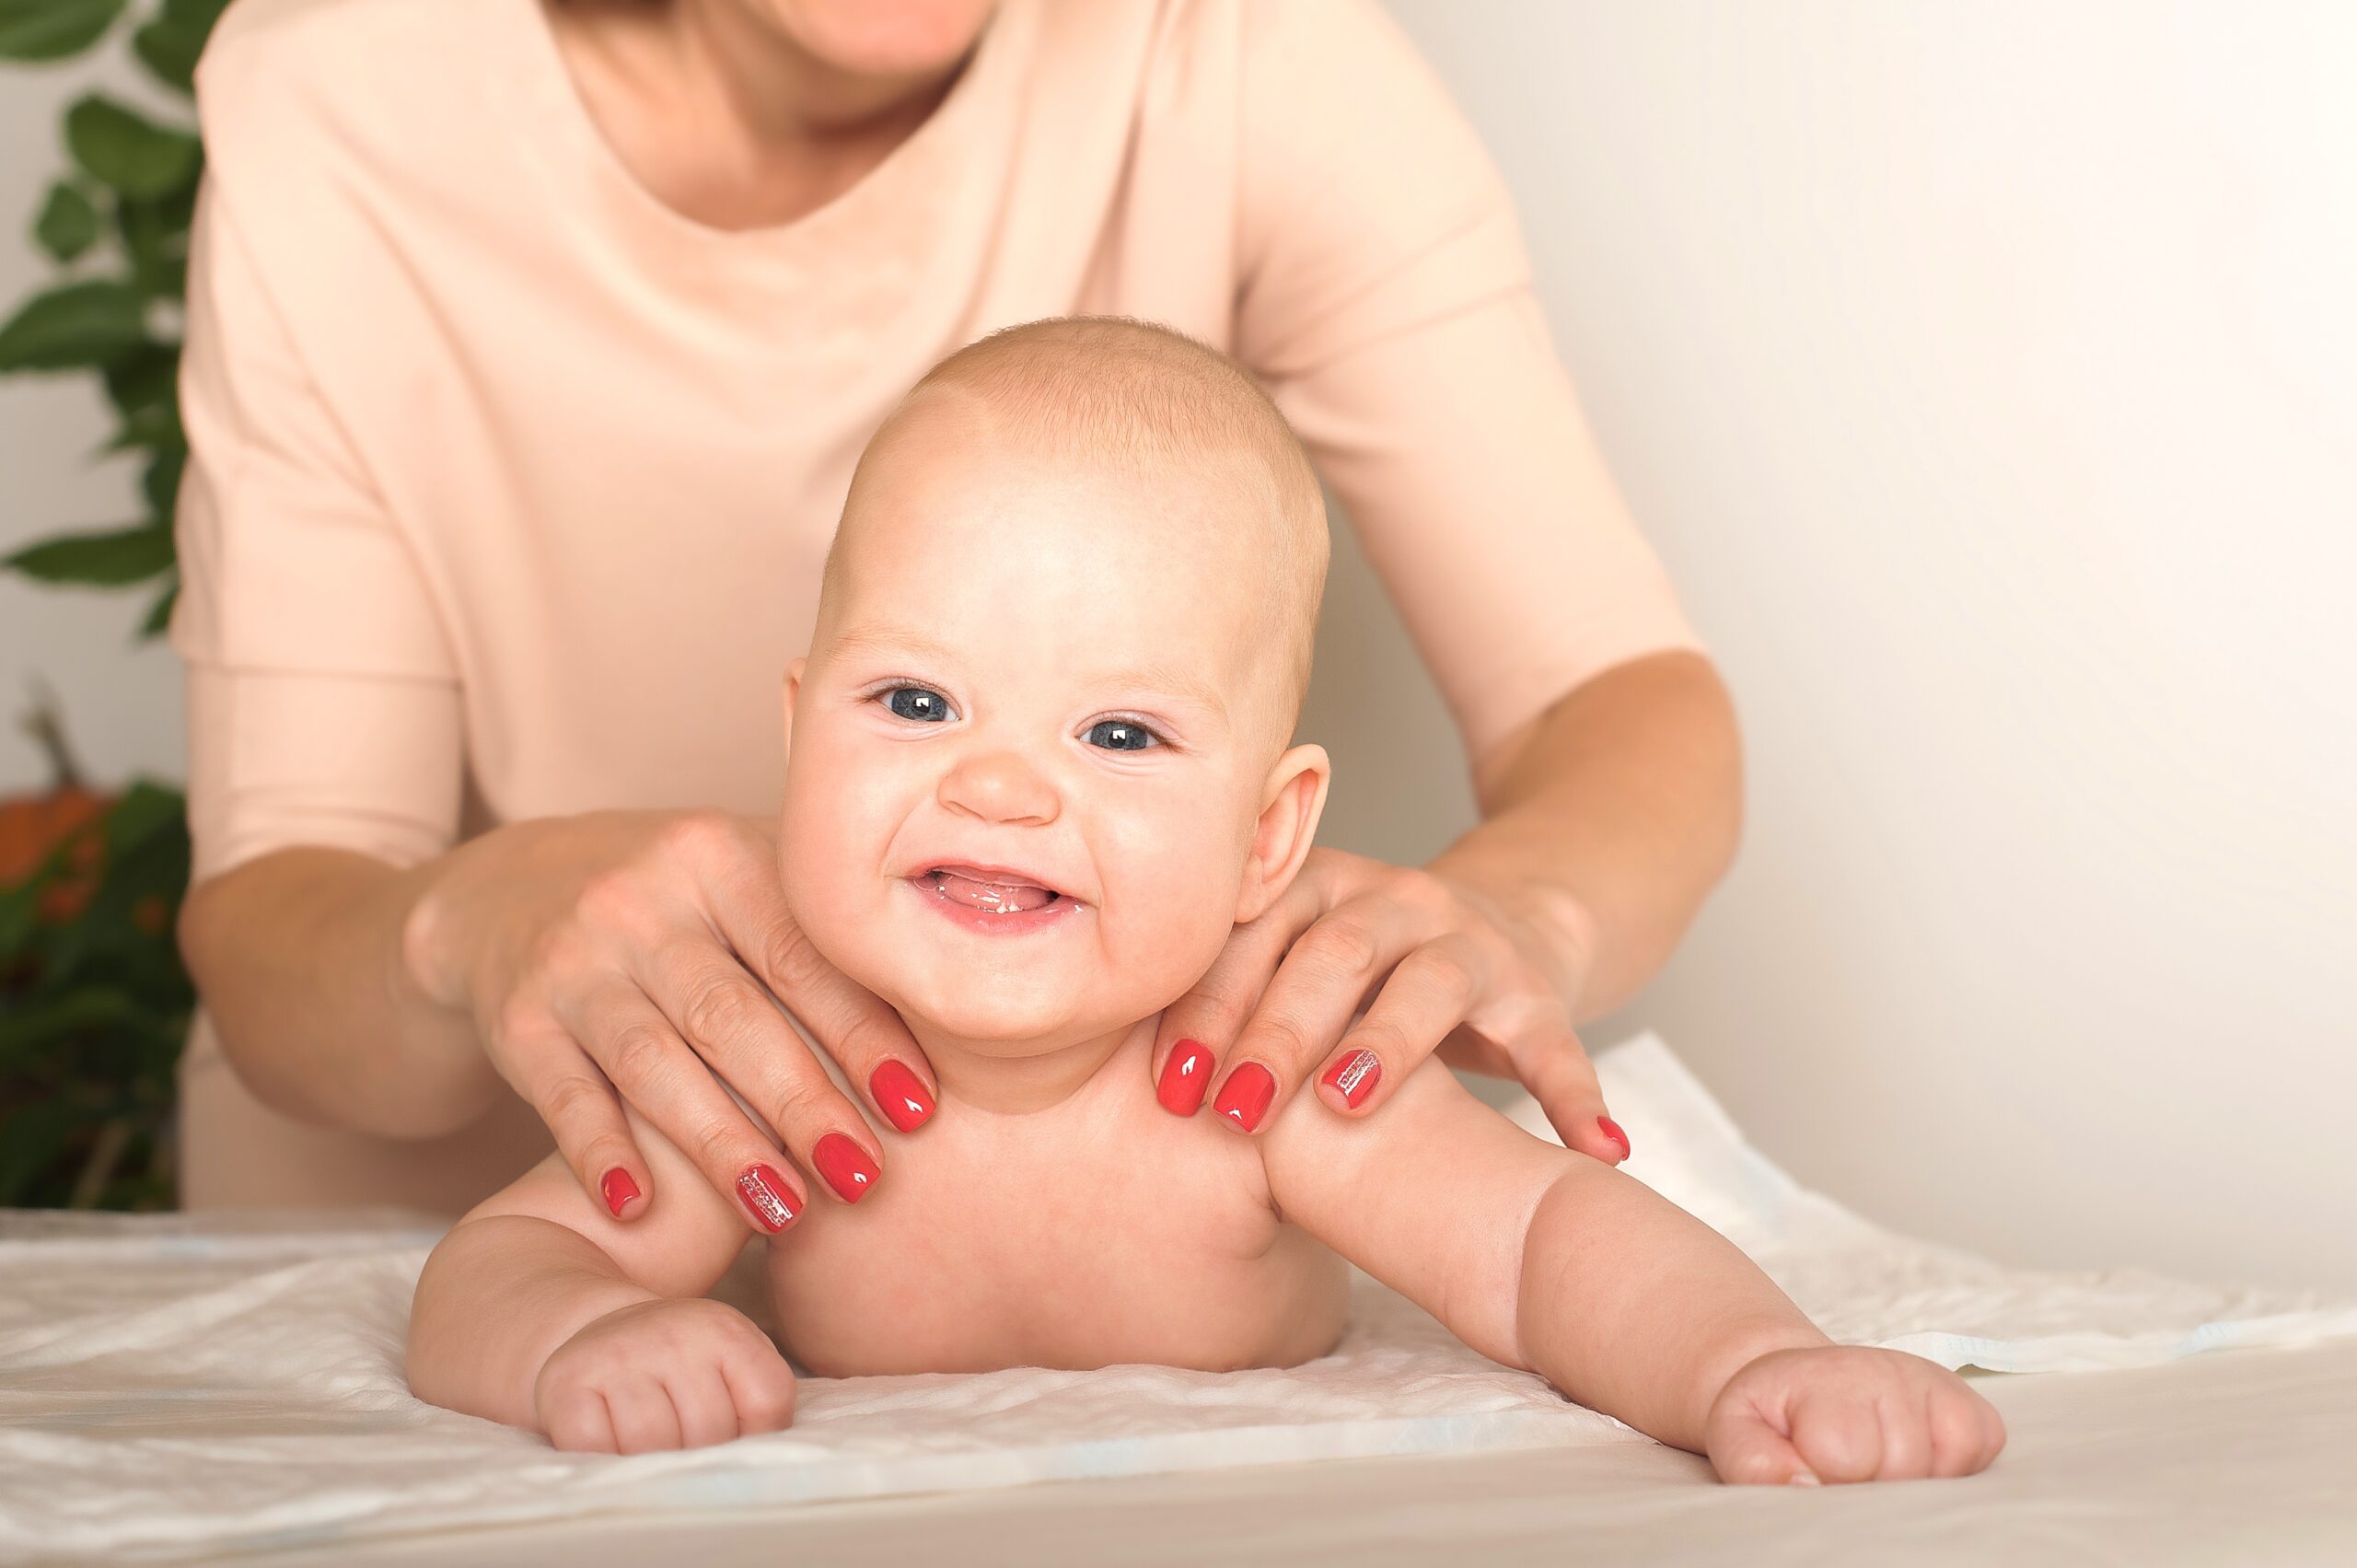 El masaje infantil combate la depresión postparto materna